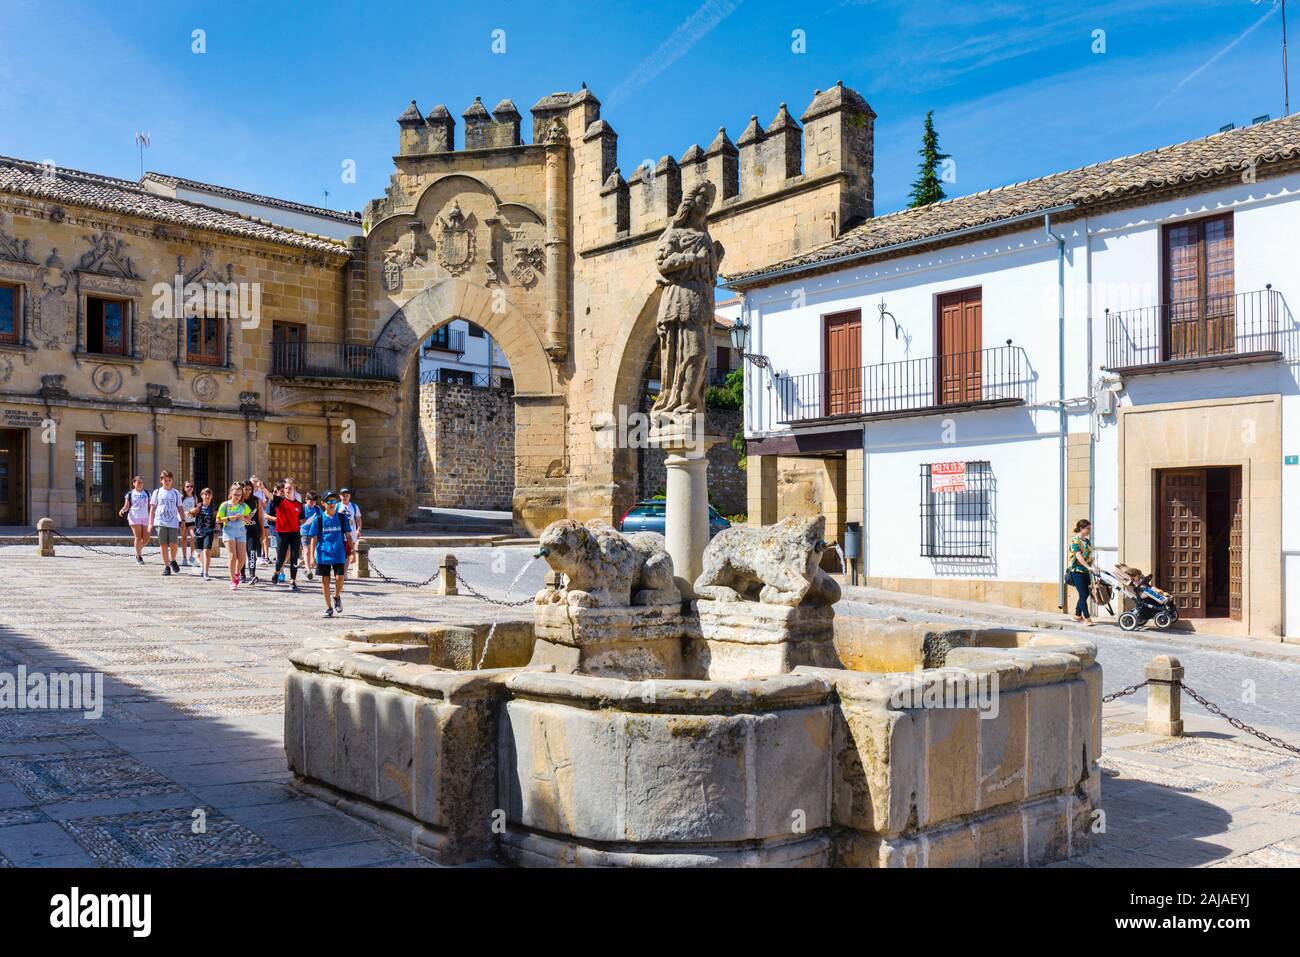 Fuente de los Leones, ou Fontaine des Lions, sur la Plaza del populo, Baeza, Jaen Province, Andalusia, Spain. La porte de ville d'ornement dans le dos Banque D'Images